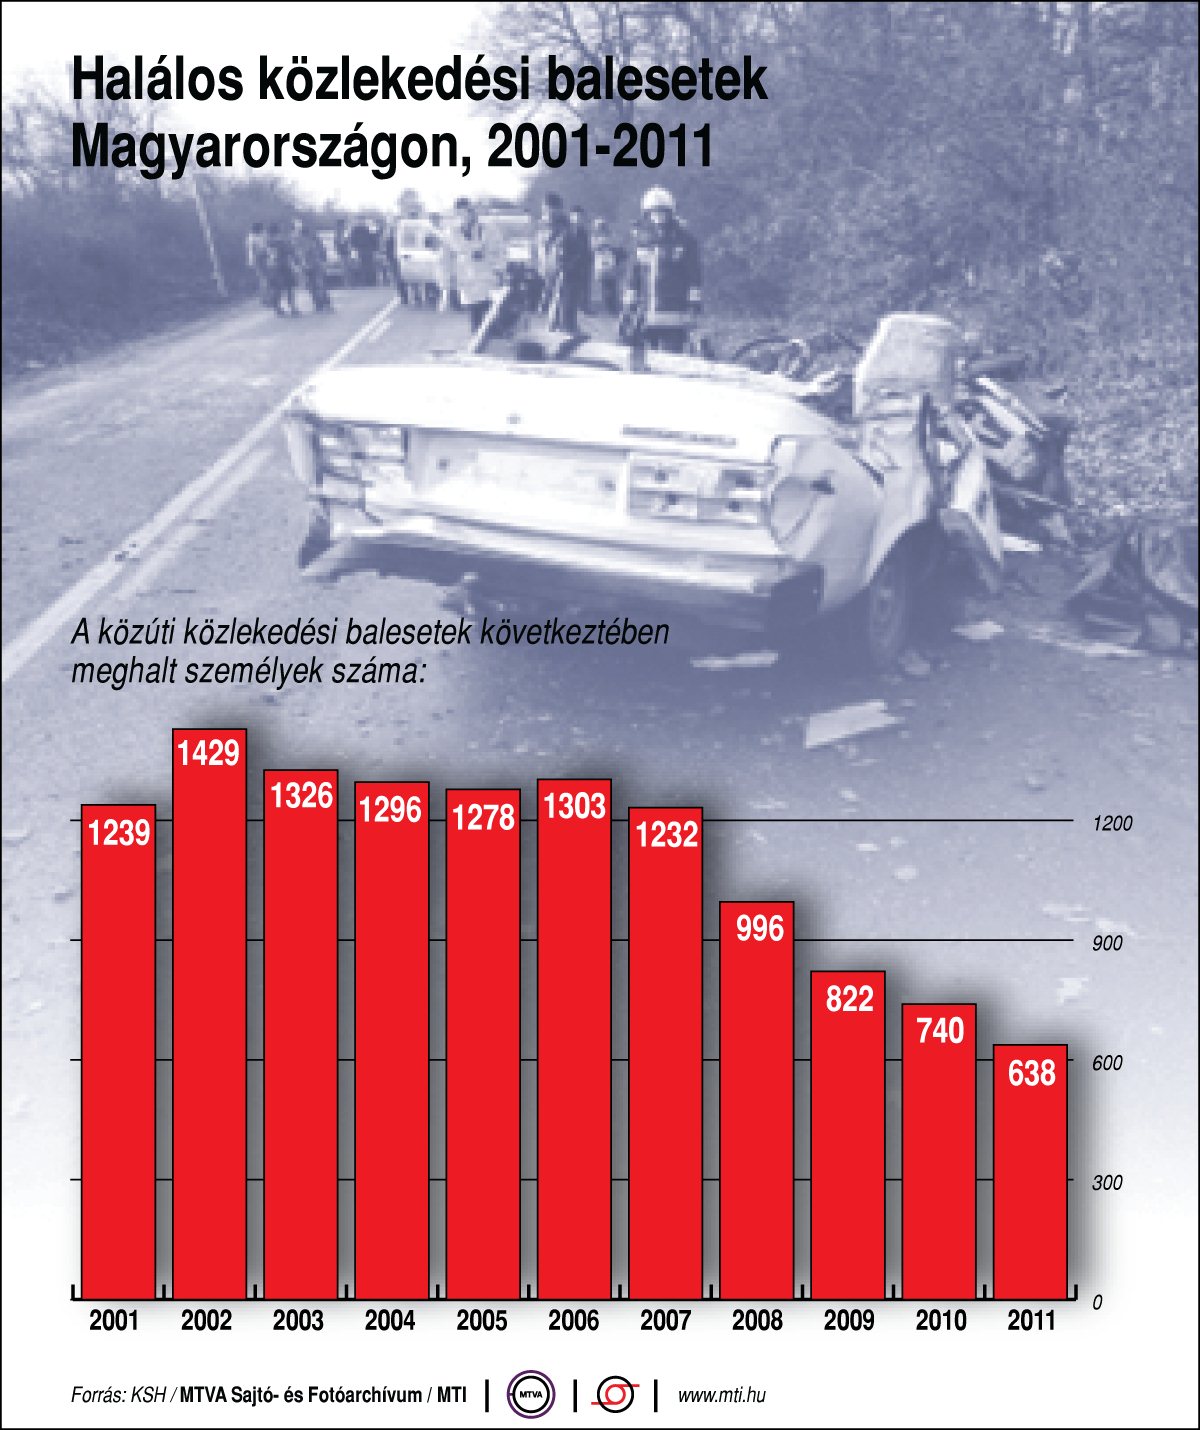 A közúti közlekedési balesetek során meghalt személyek száma Magyarországon (2001-2011)